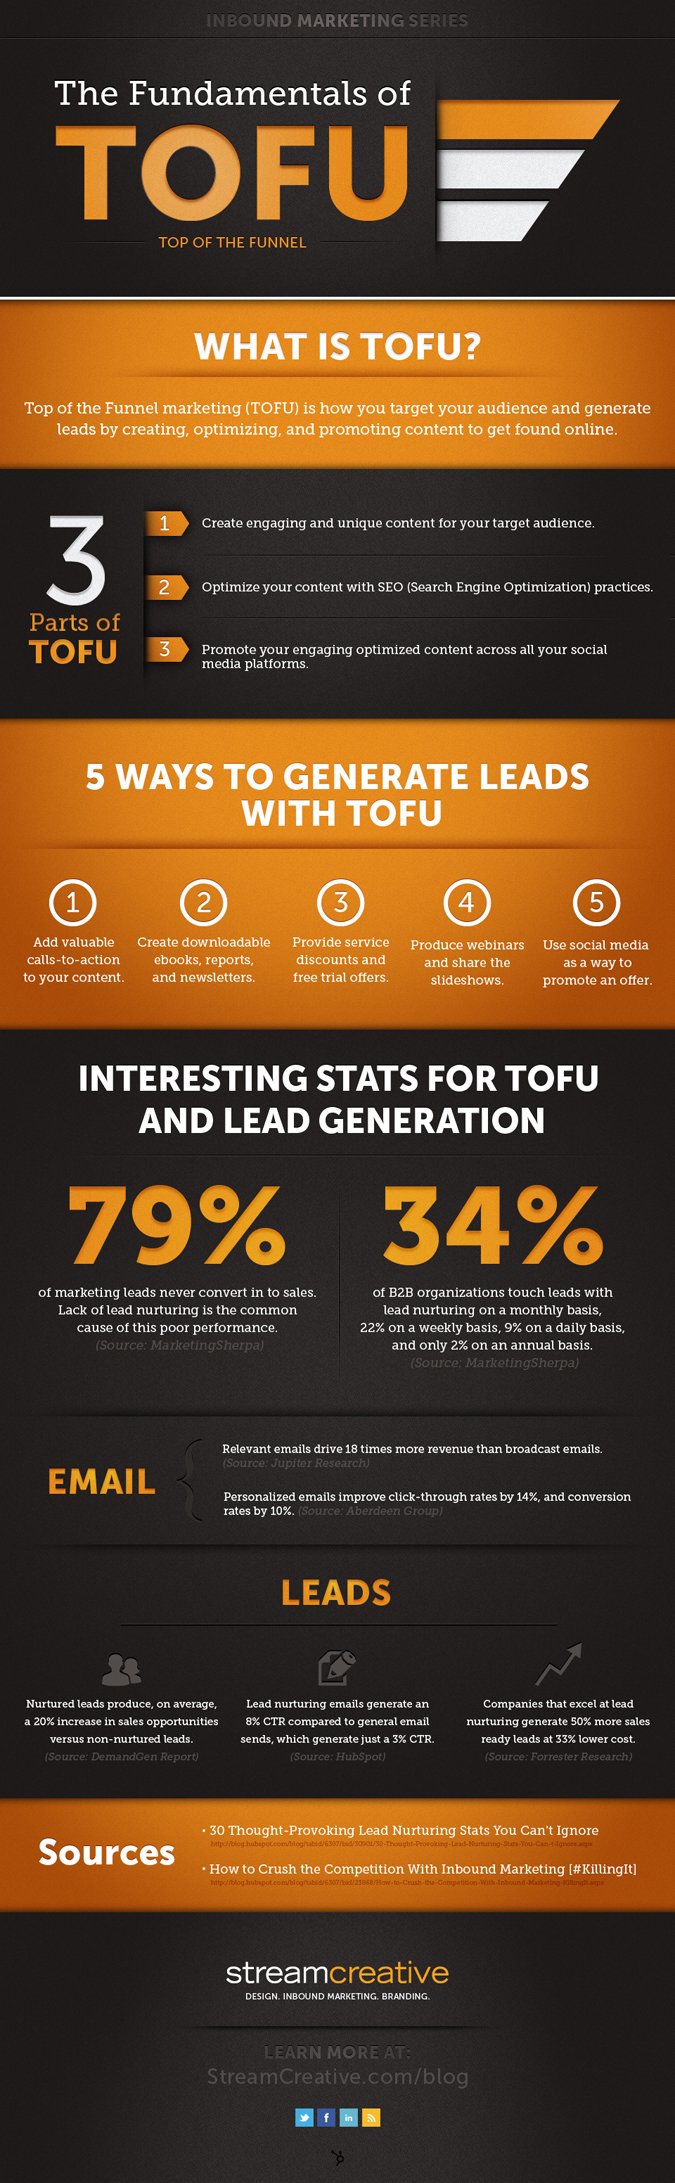 TOFU marketing infographic 600